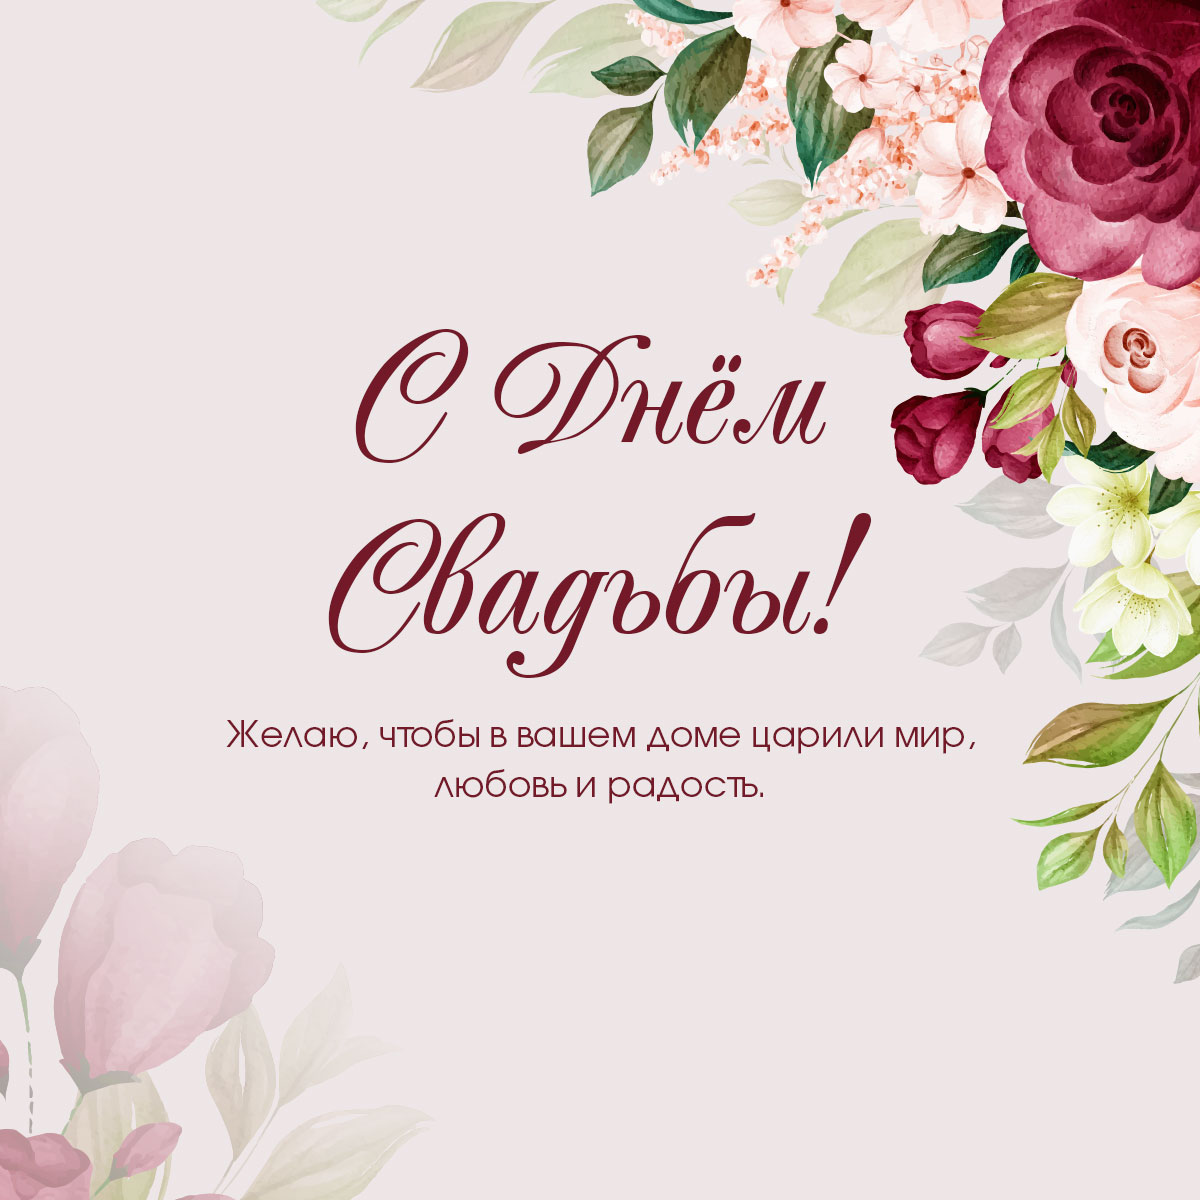 Открытка с текстом поздравления с днем свадьбы своими словами и розы, пионы и бегонии на нежно-розовом фоне.